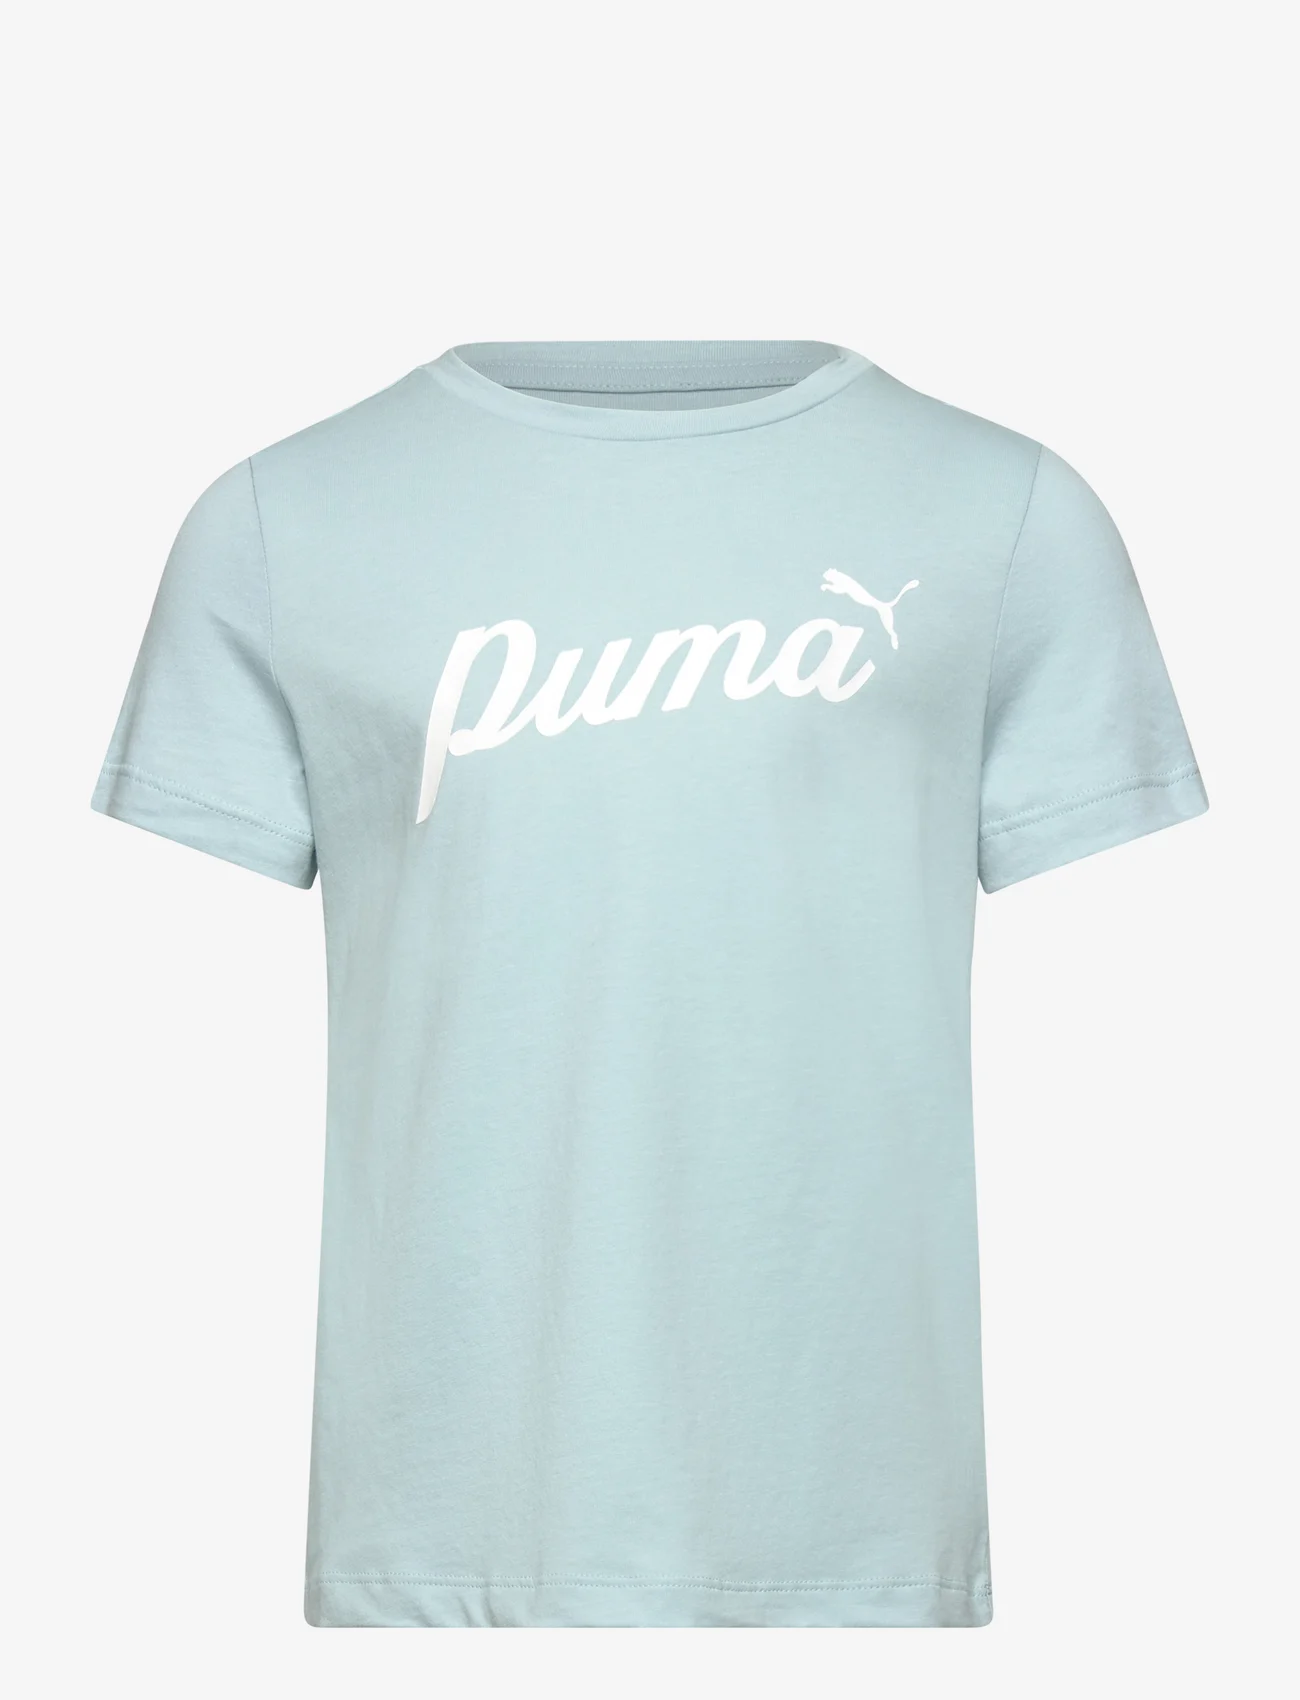 PUMA - ESS+ Script Tee G - kurzärmelig - turquoise surf - 0